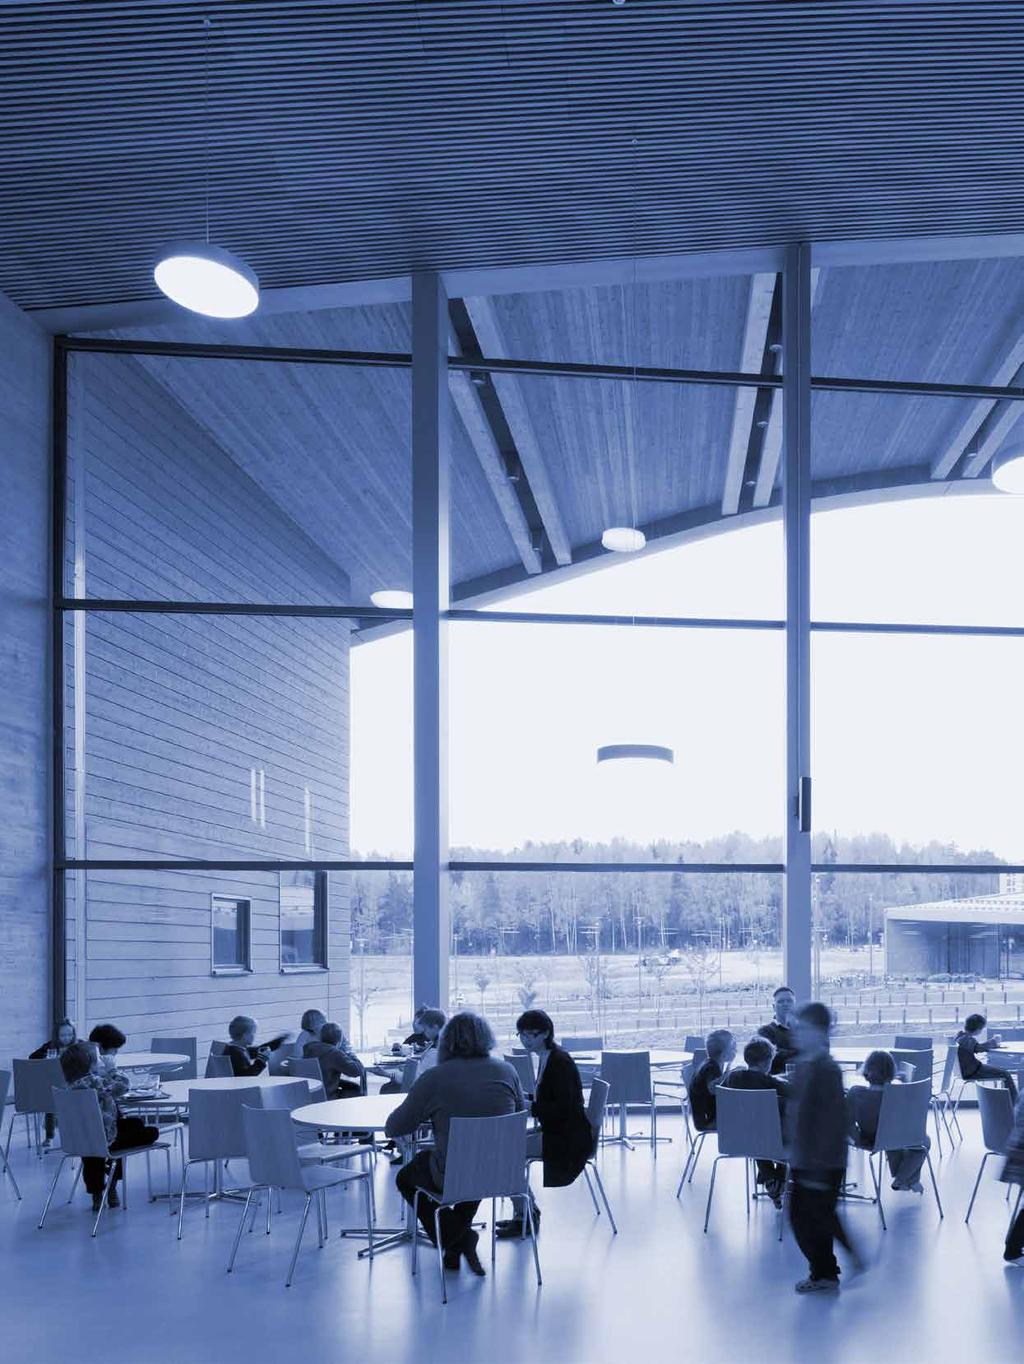 Saunalahden koulu on Espoossa sijaitseva 750 oppilaan peruskoulu, jonka Verstas arkkitehdit suunnitteli kilpailuvoittonsa pohjalta.